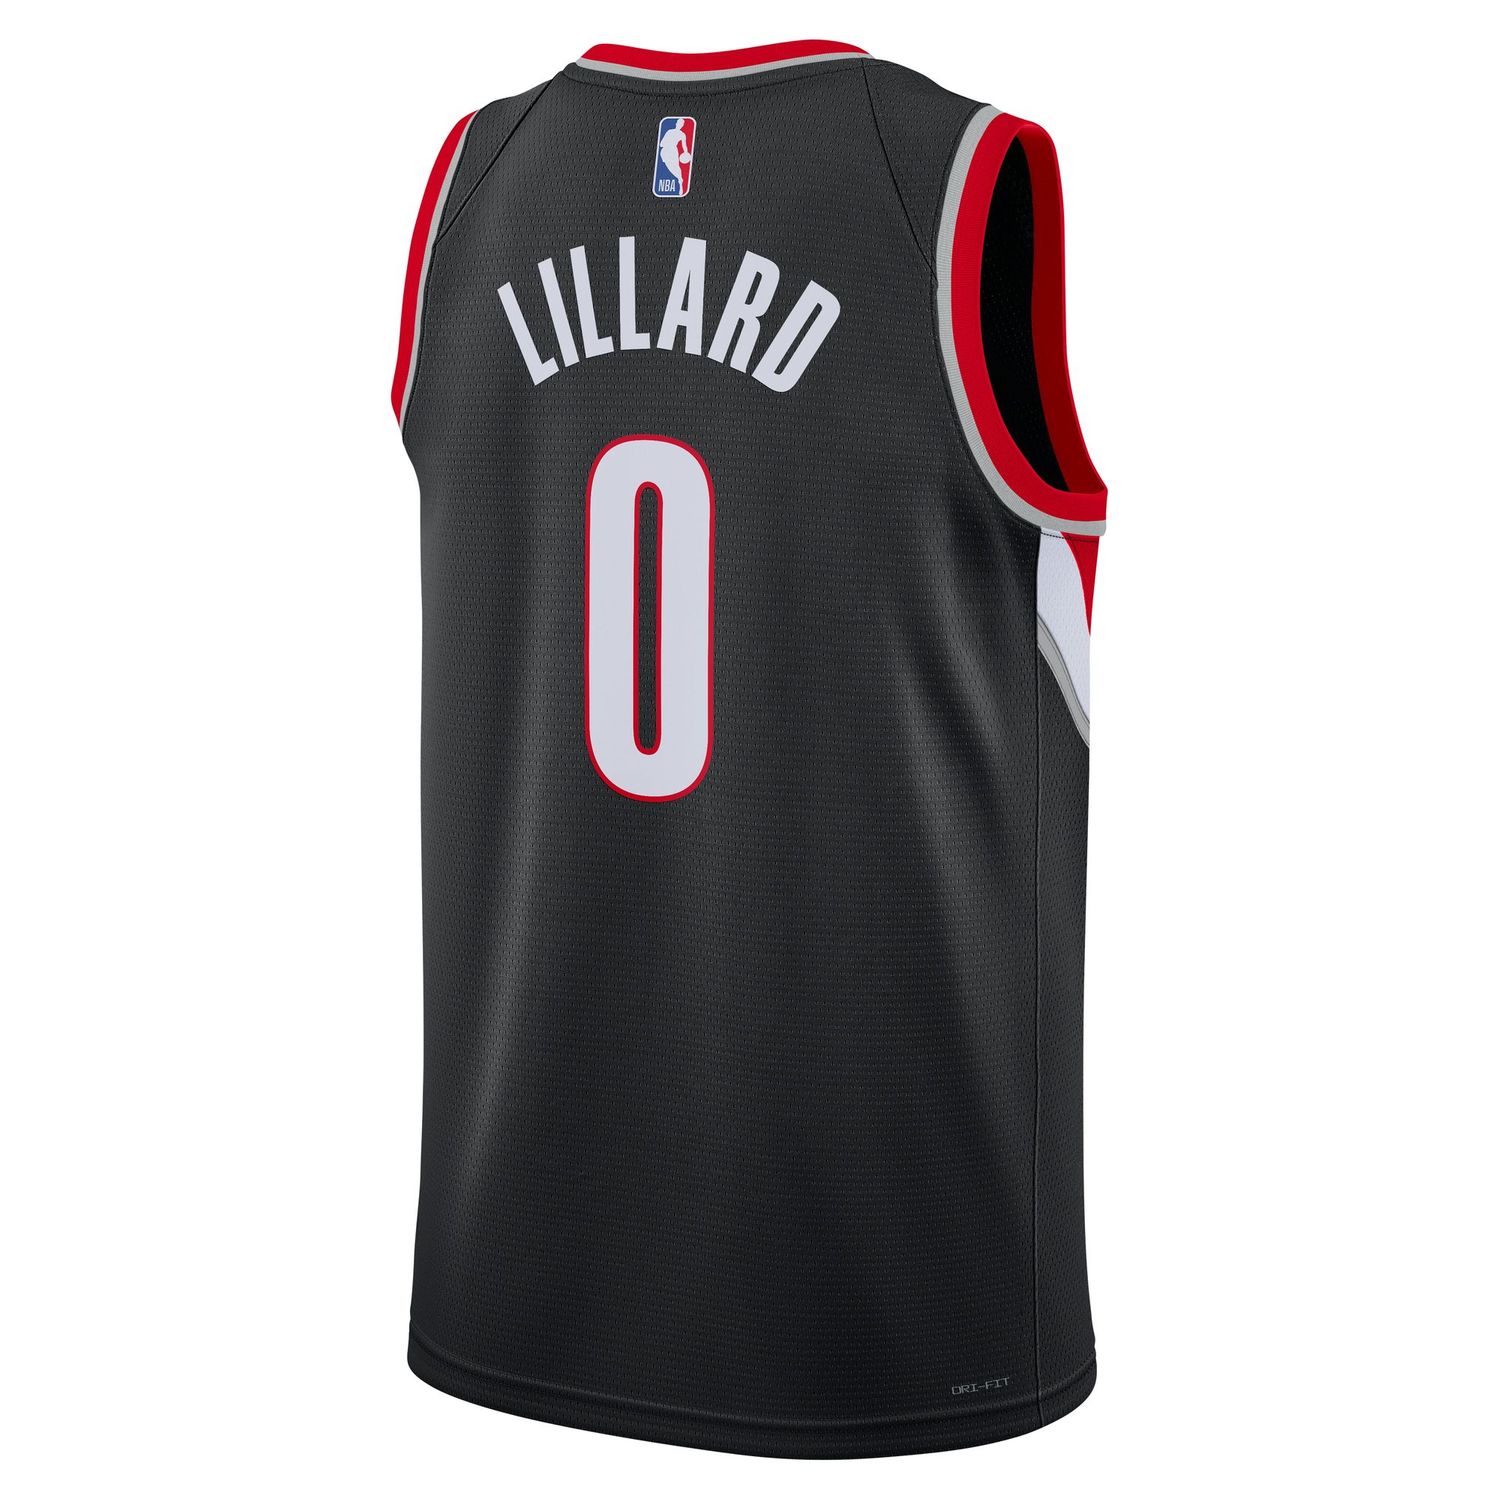 Nike Damian Lillard NBA Icon Edition Swingman Jersey